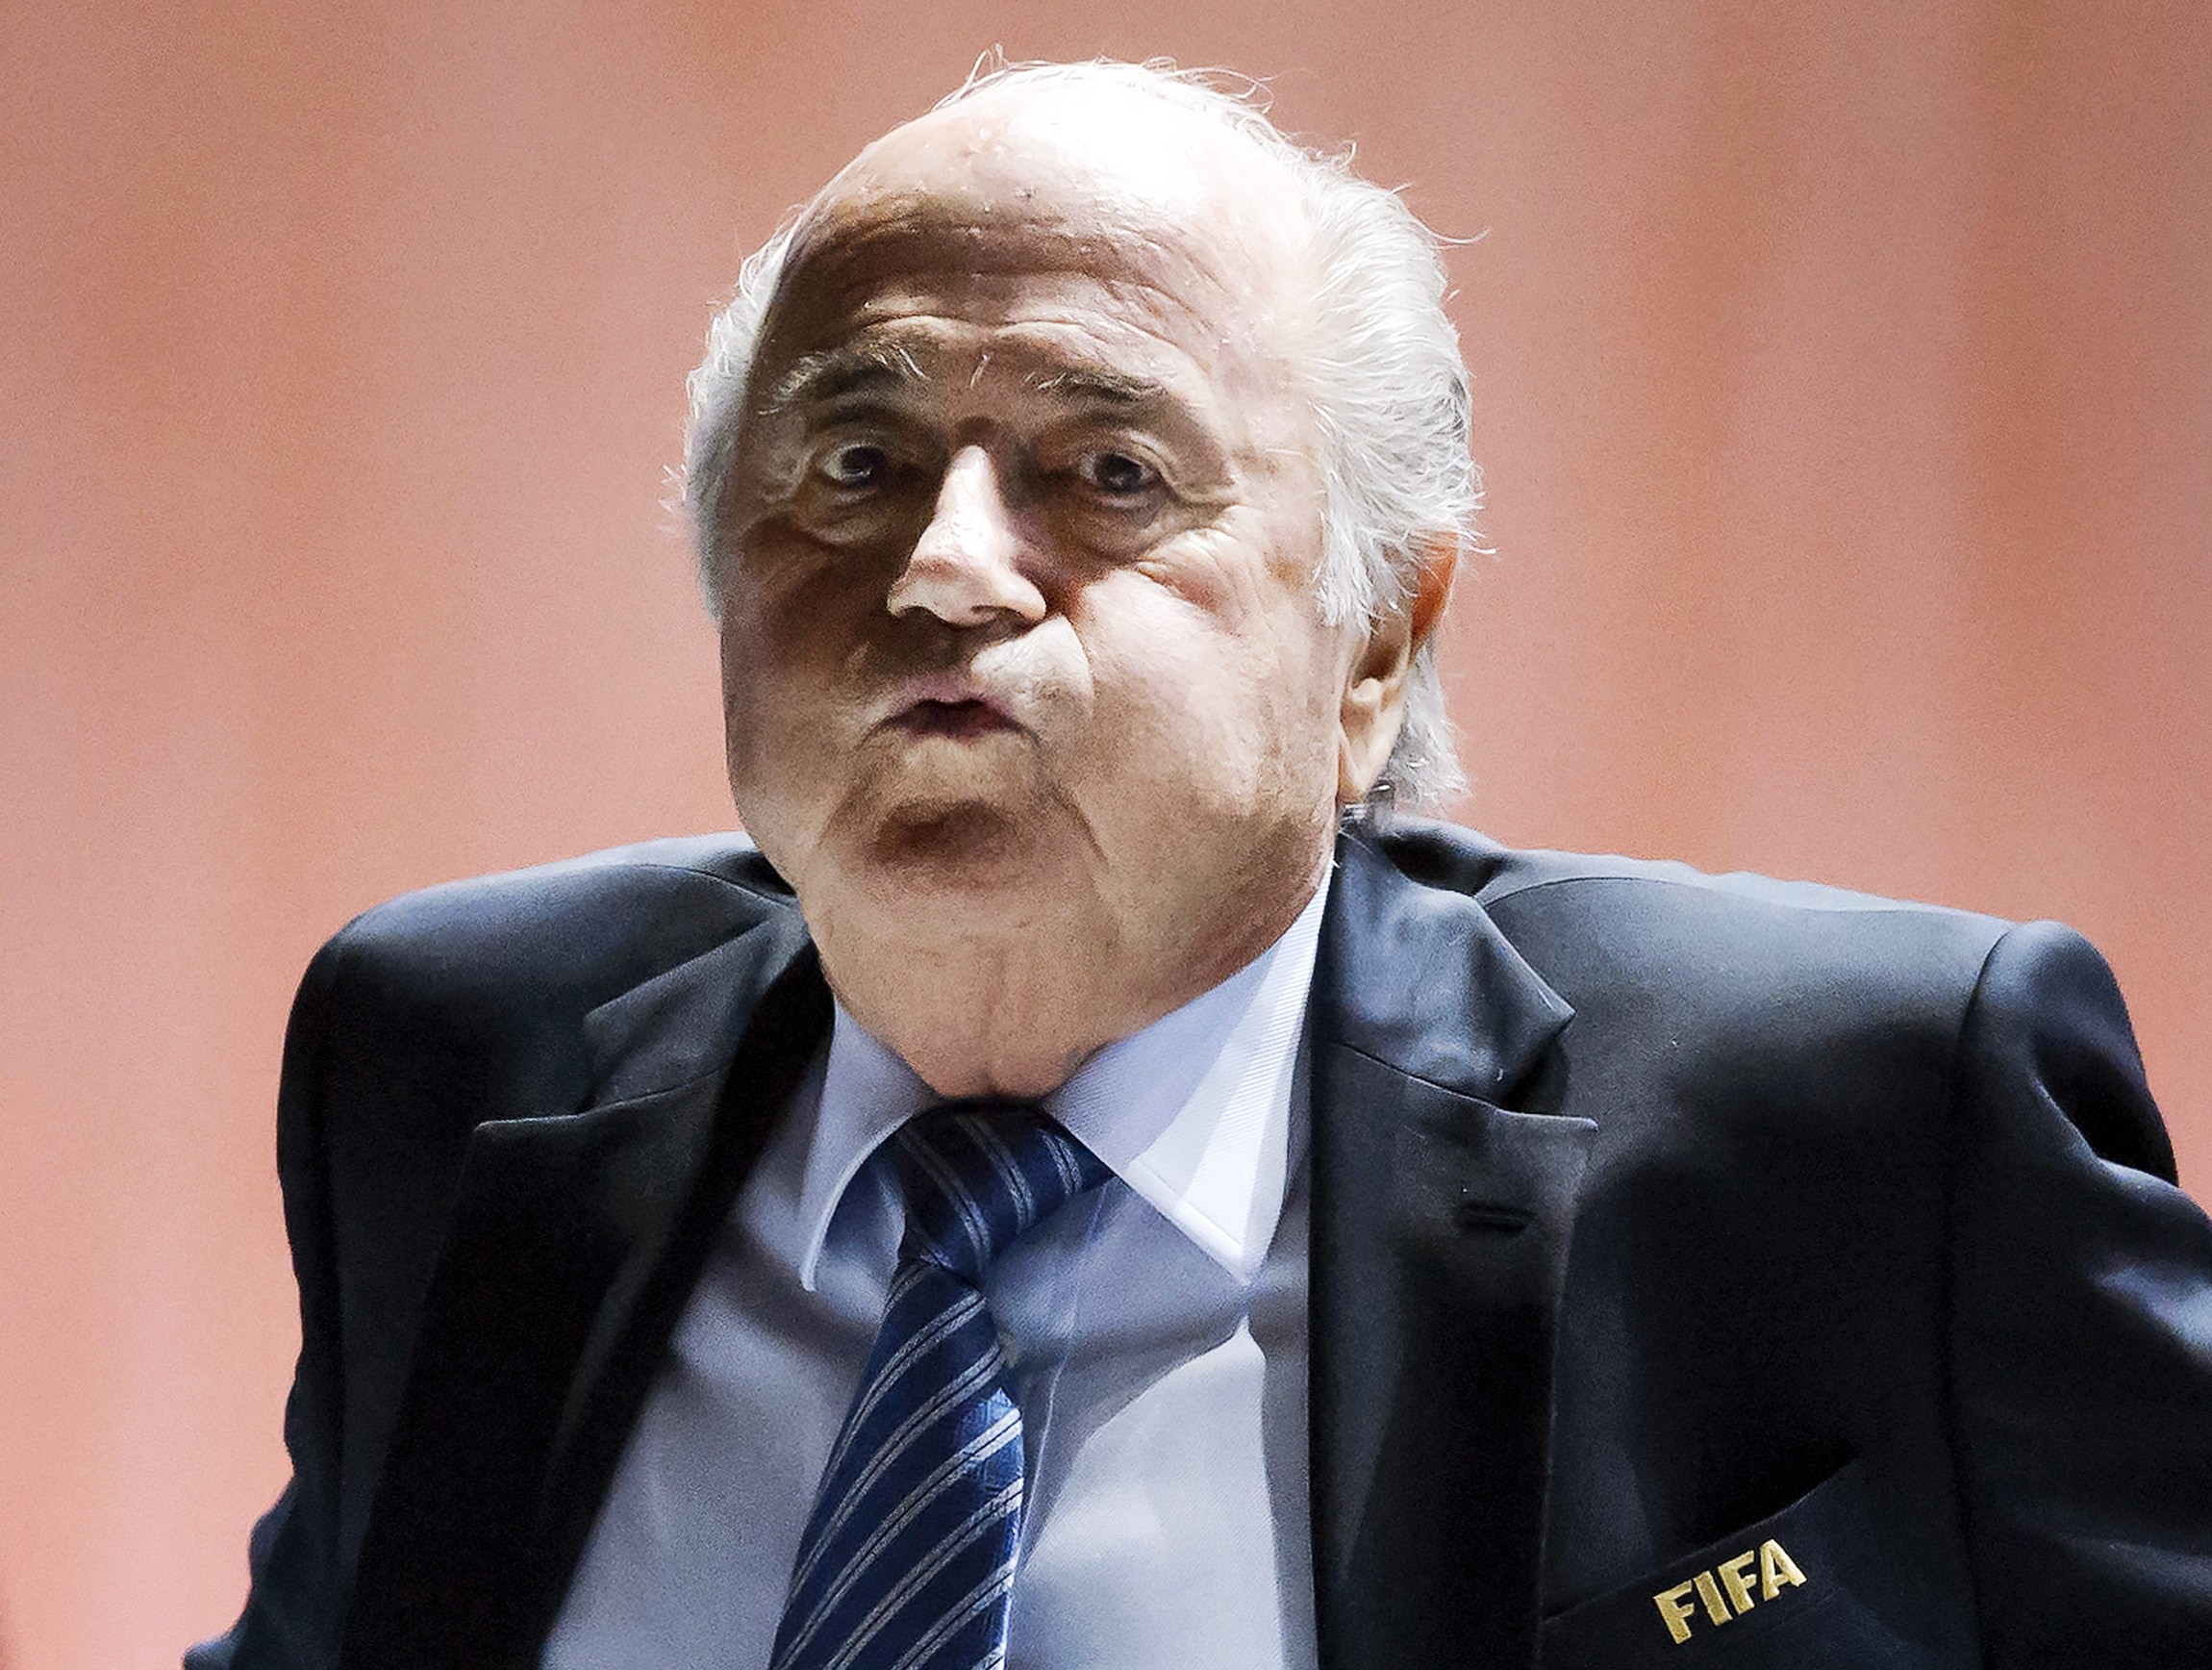 Temendo prisão, Blatter recusa convite para a festa de 100 anos de Havelange